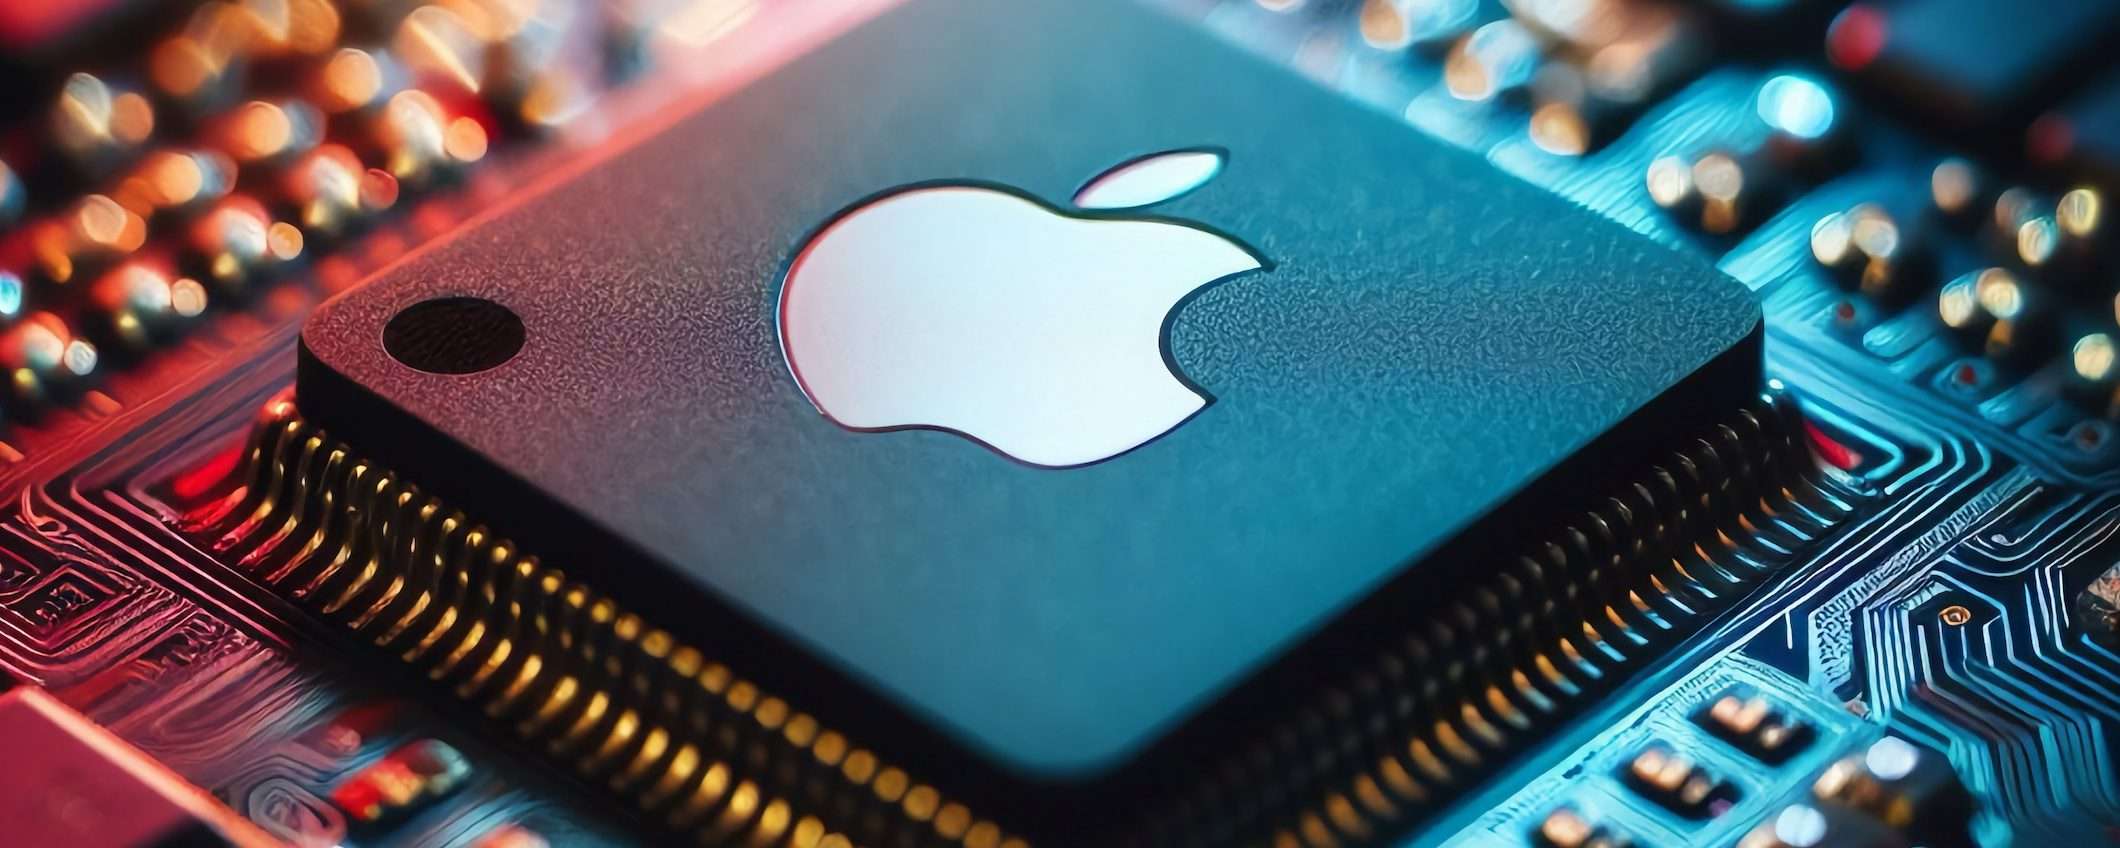 Apple: prima azienda con chip TSMC a 2 nm